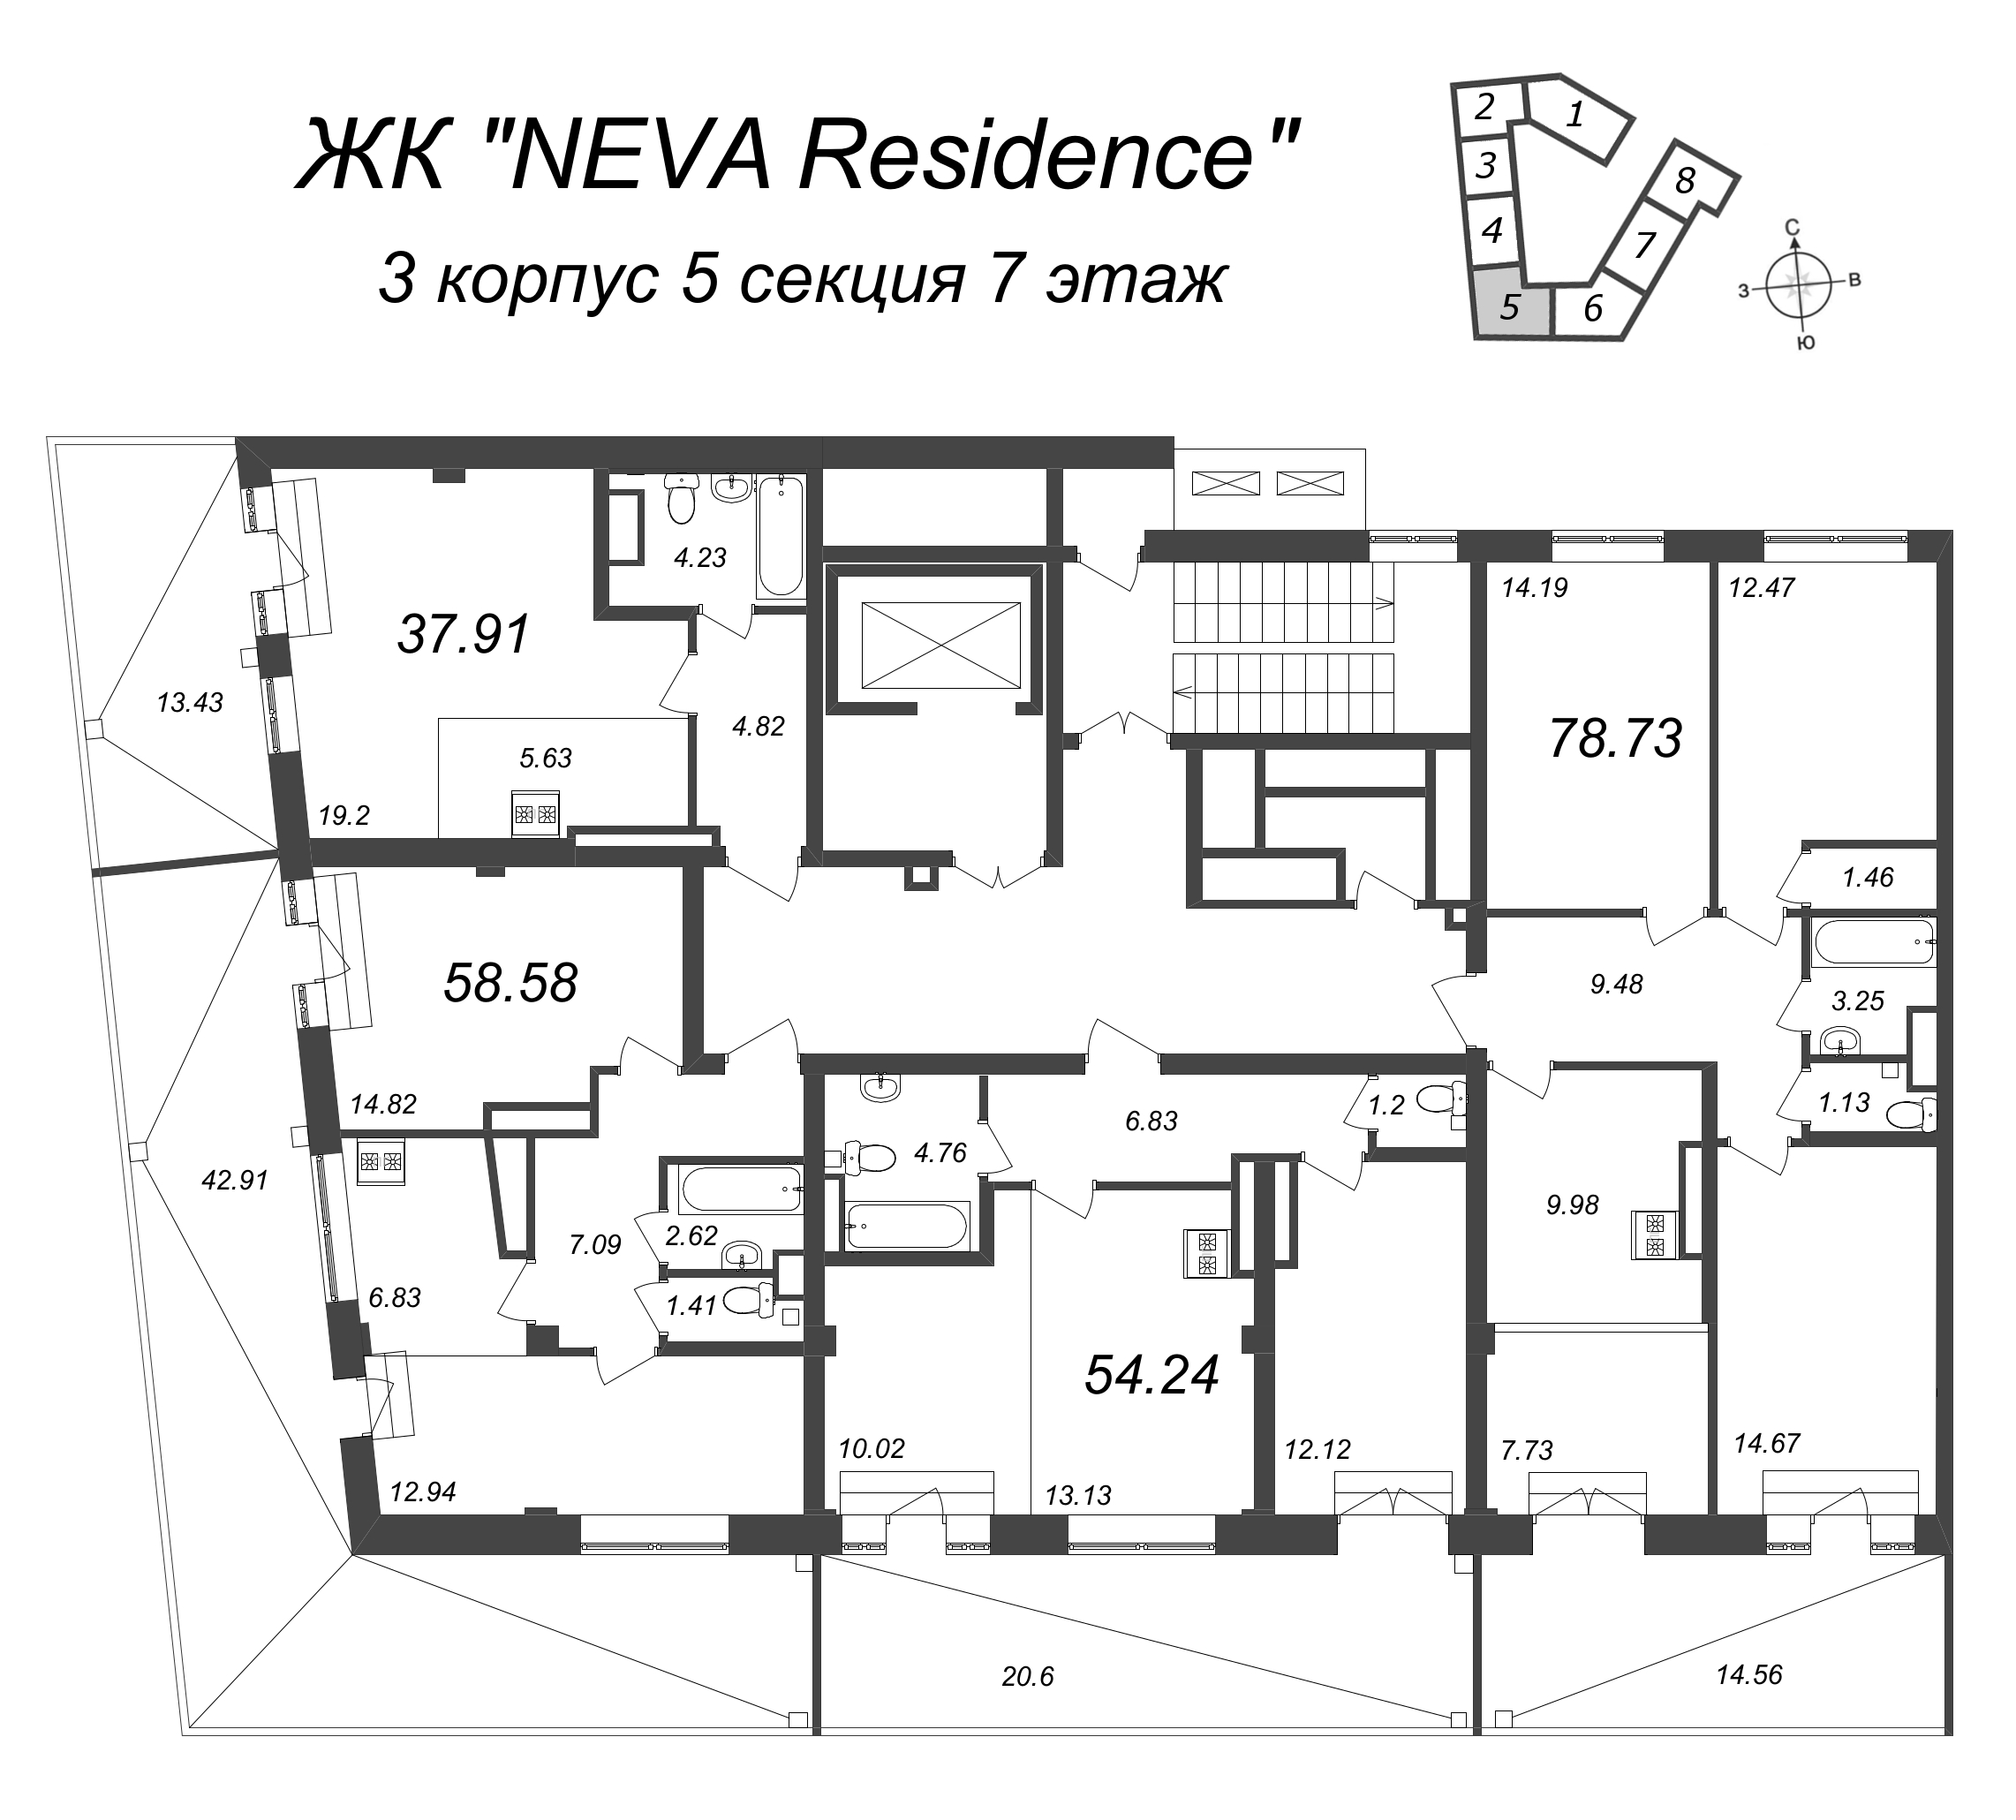 Квартира-студия, 37.91 м² в ЖК "Neva Residence" - планировка этажа